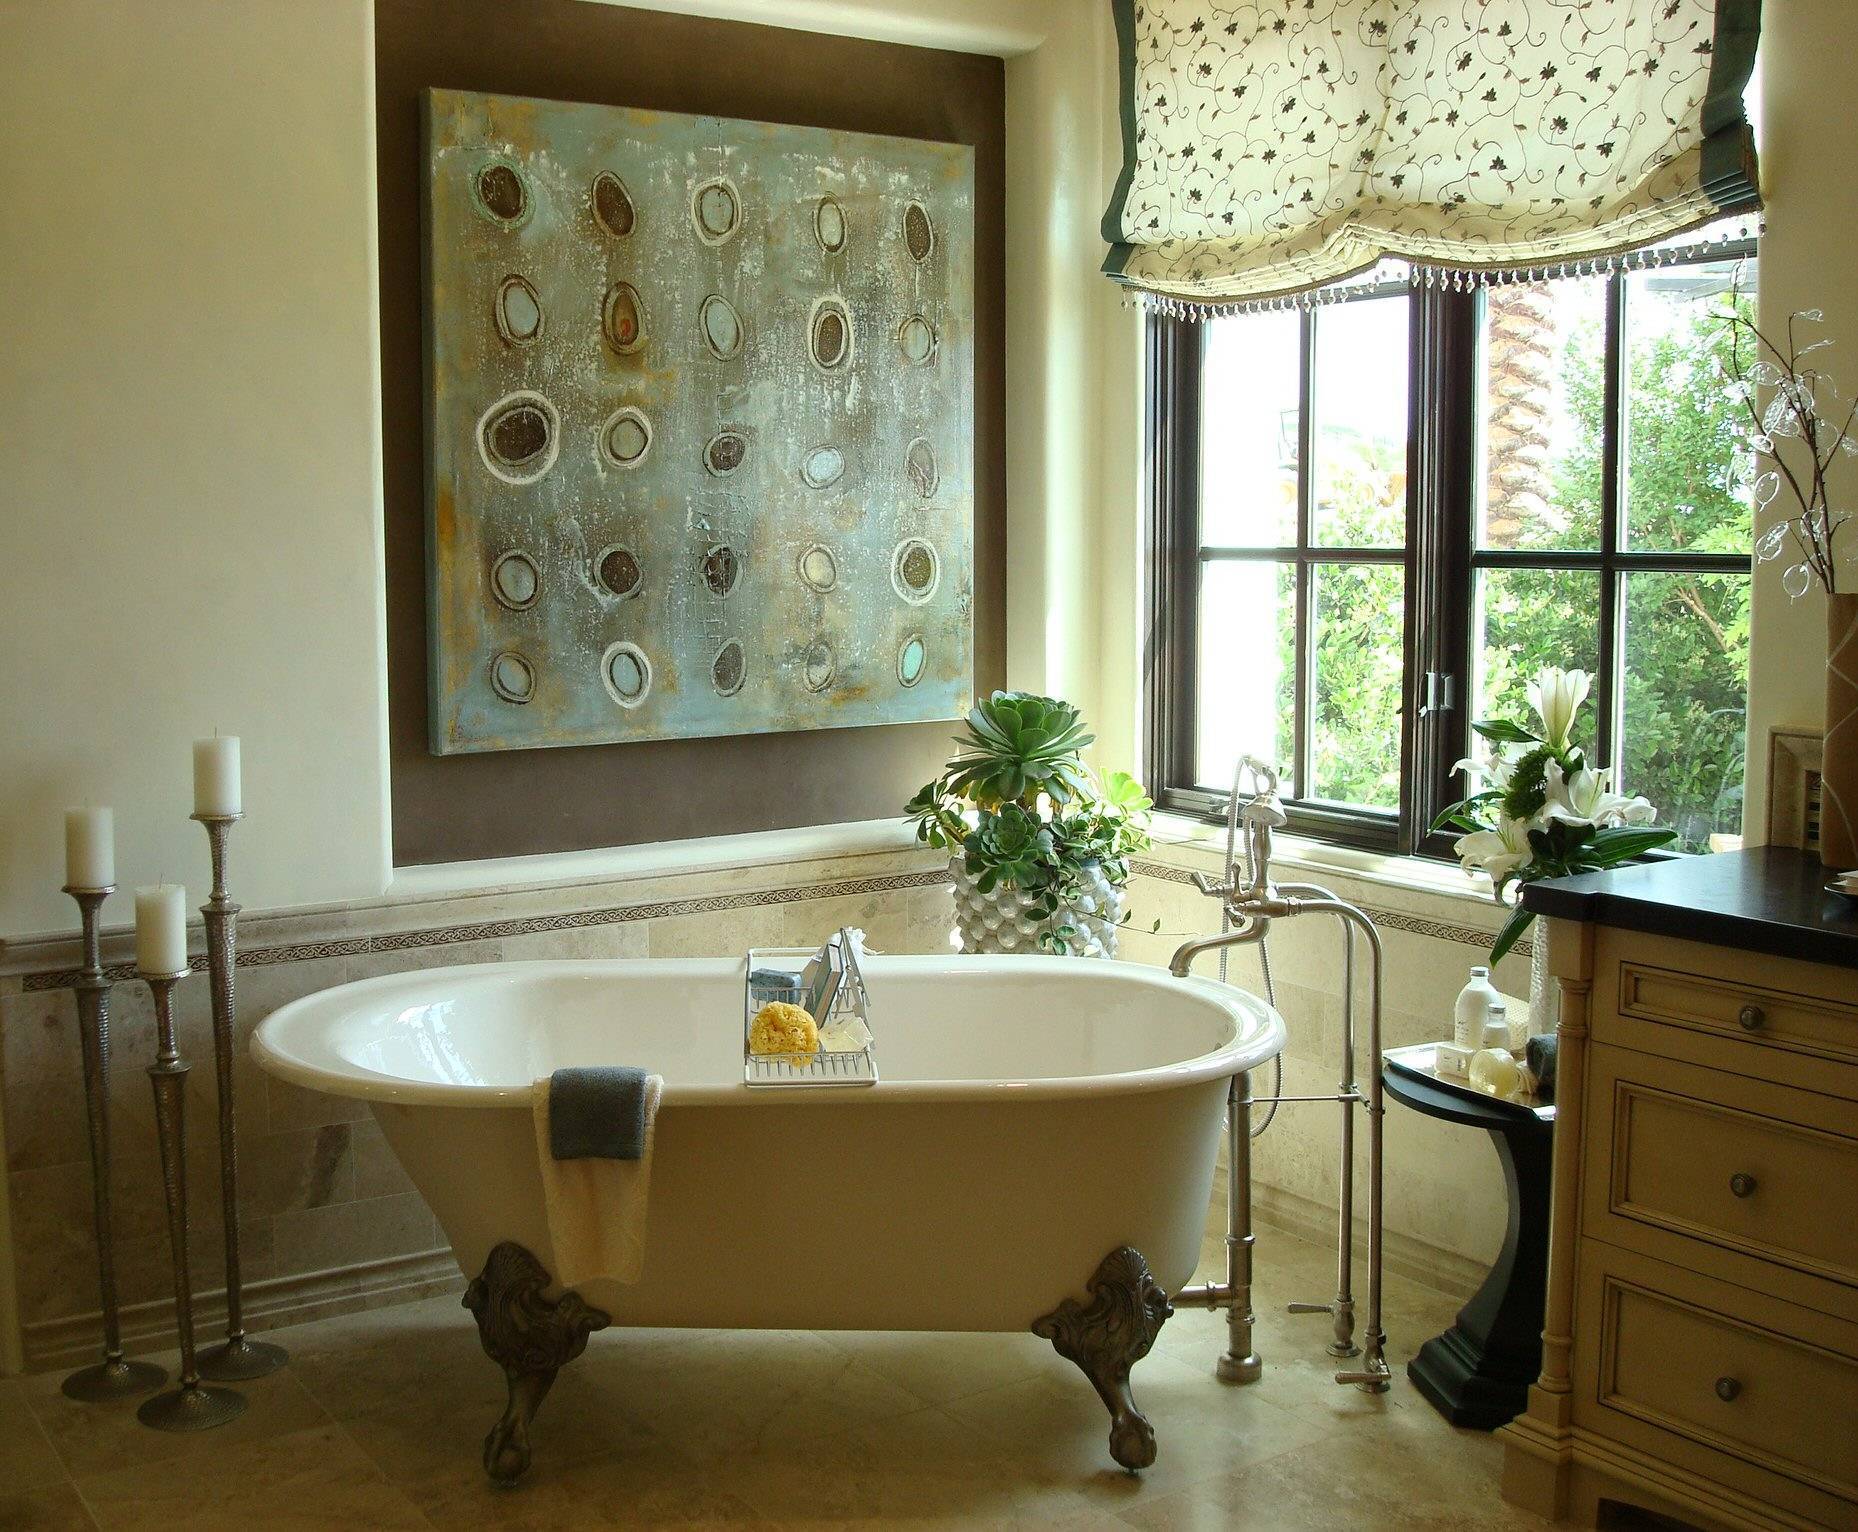 Декор ванной комнаты своими руками: основные приемы, недорого и красиво (фото и видео)